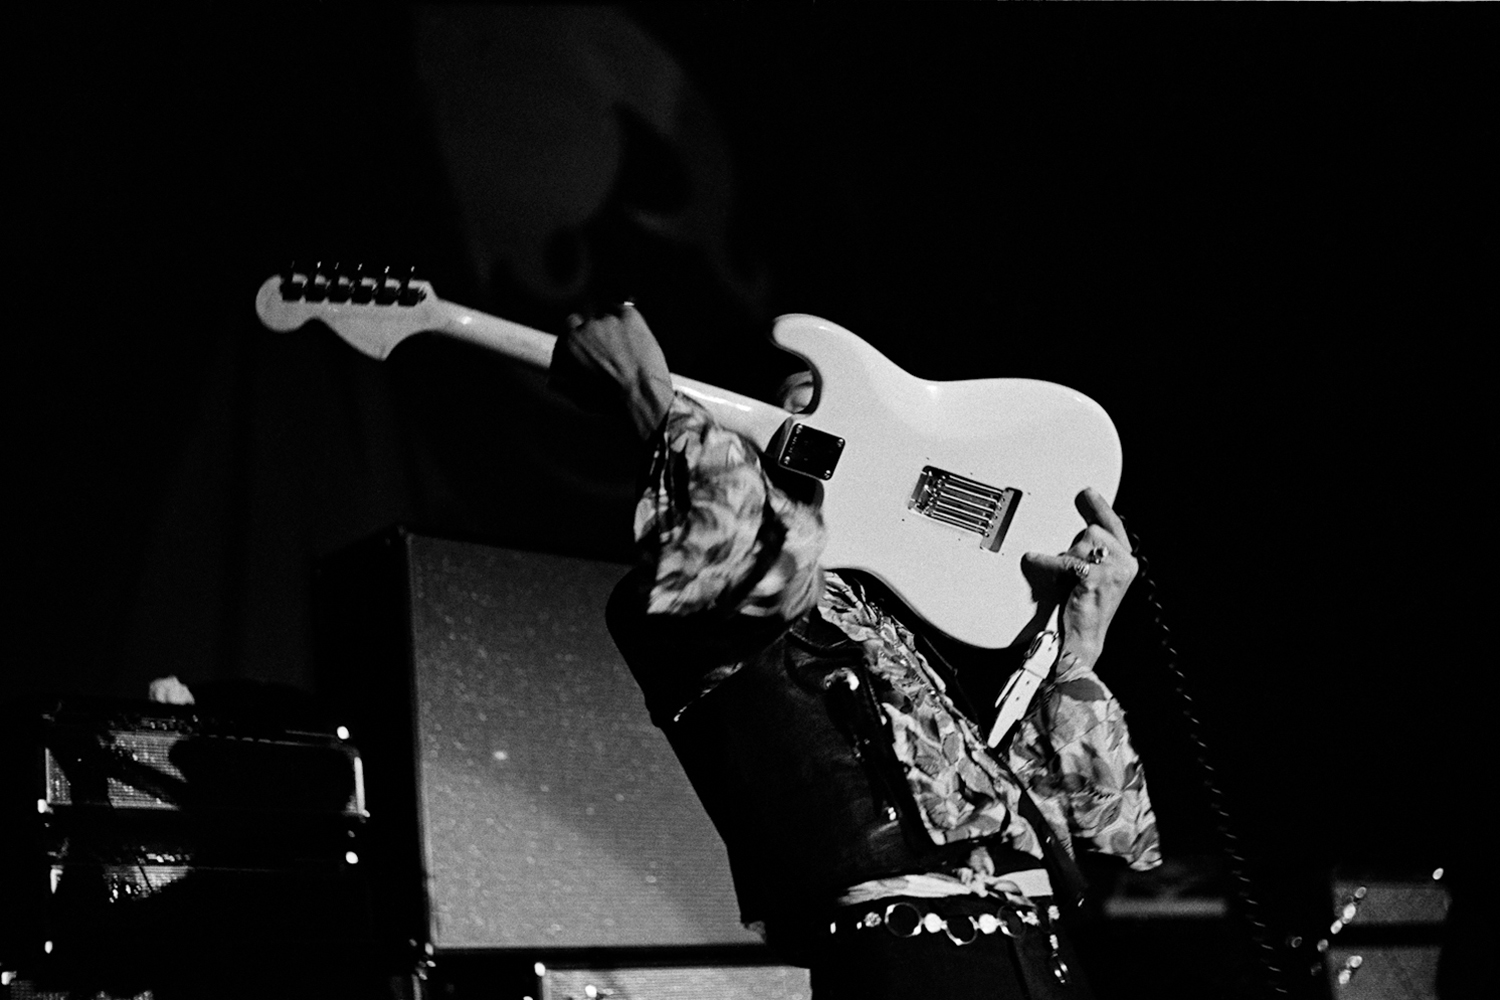 Image: Hendrix performs at Winterland, San Francisco, 1968